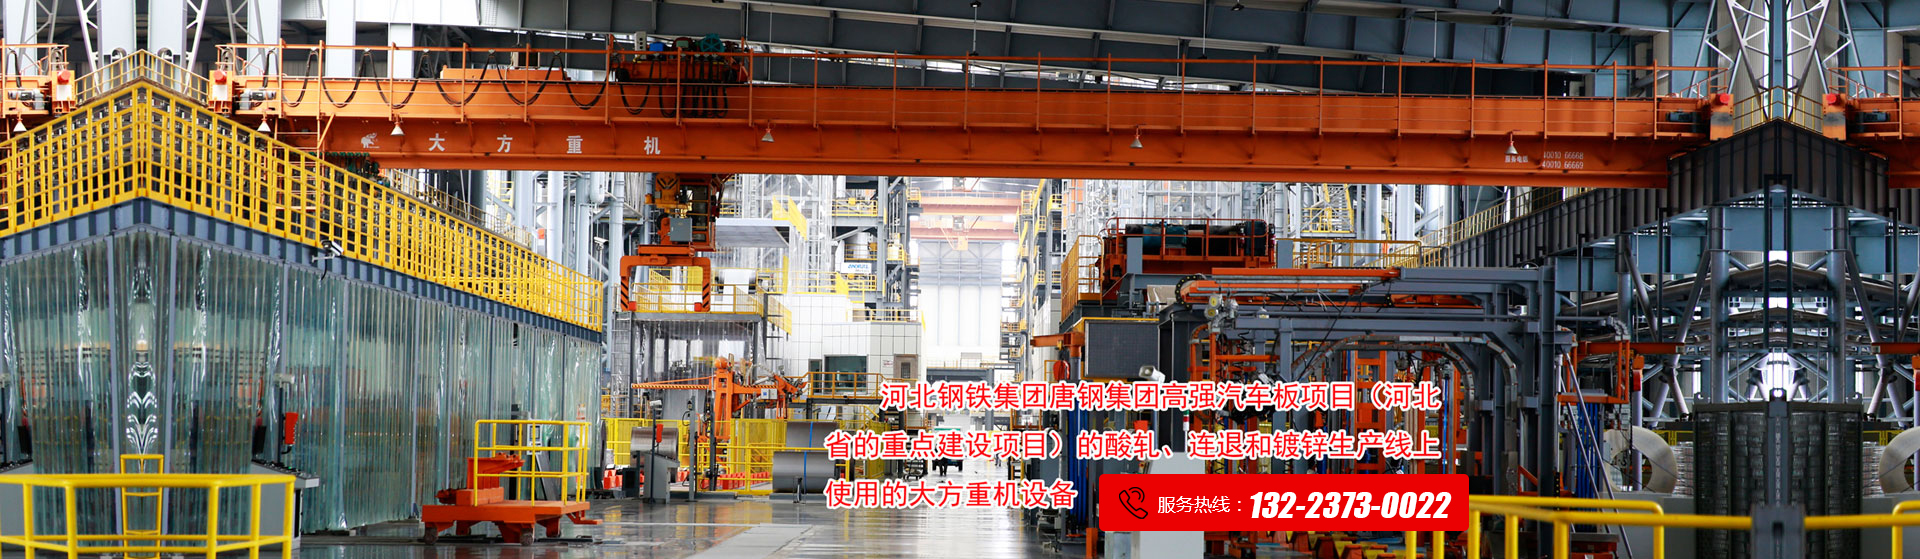 河南省大方重型机器有限公司